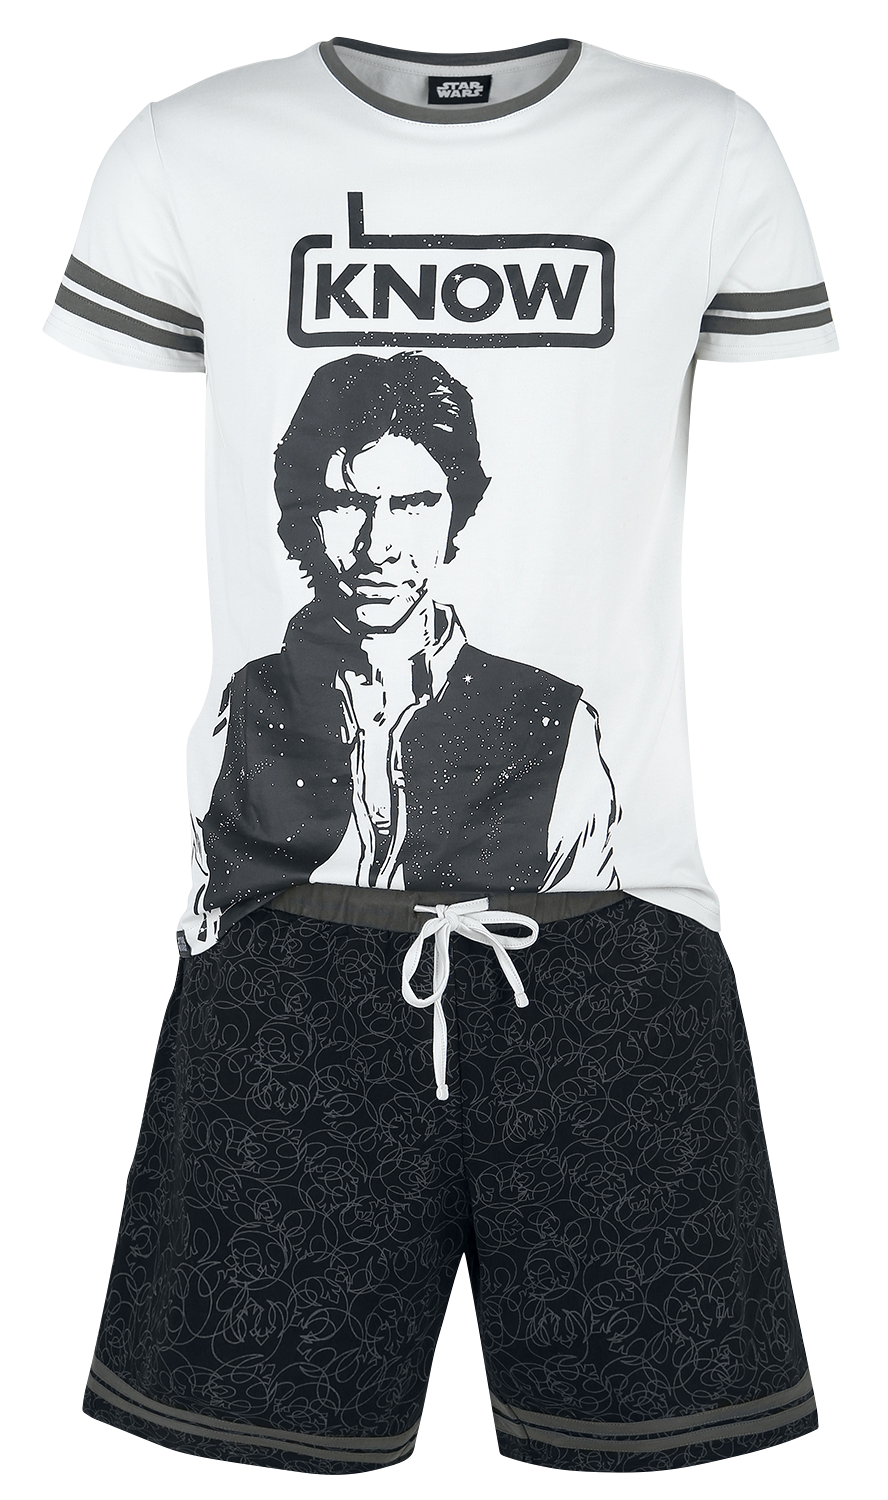 Star Wars - Han Solo - I Know - Schlafanzug - grau| schwarz - EMP Exklusiv!